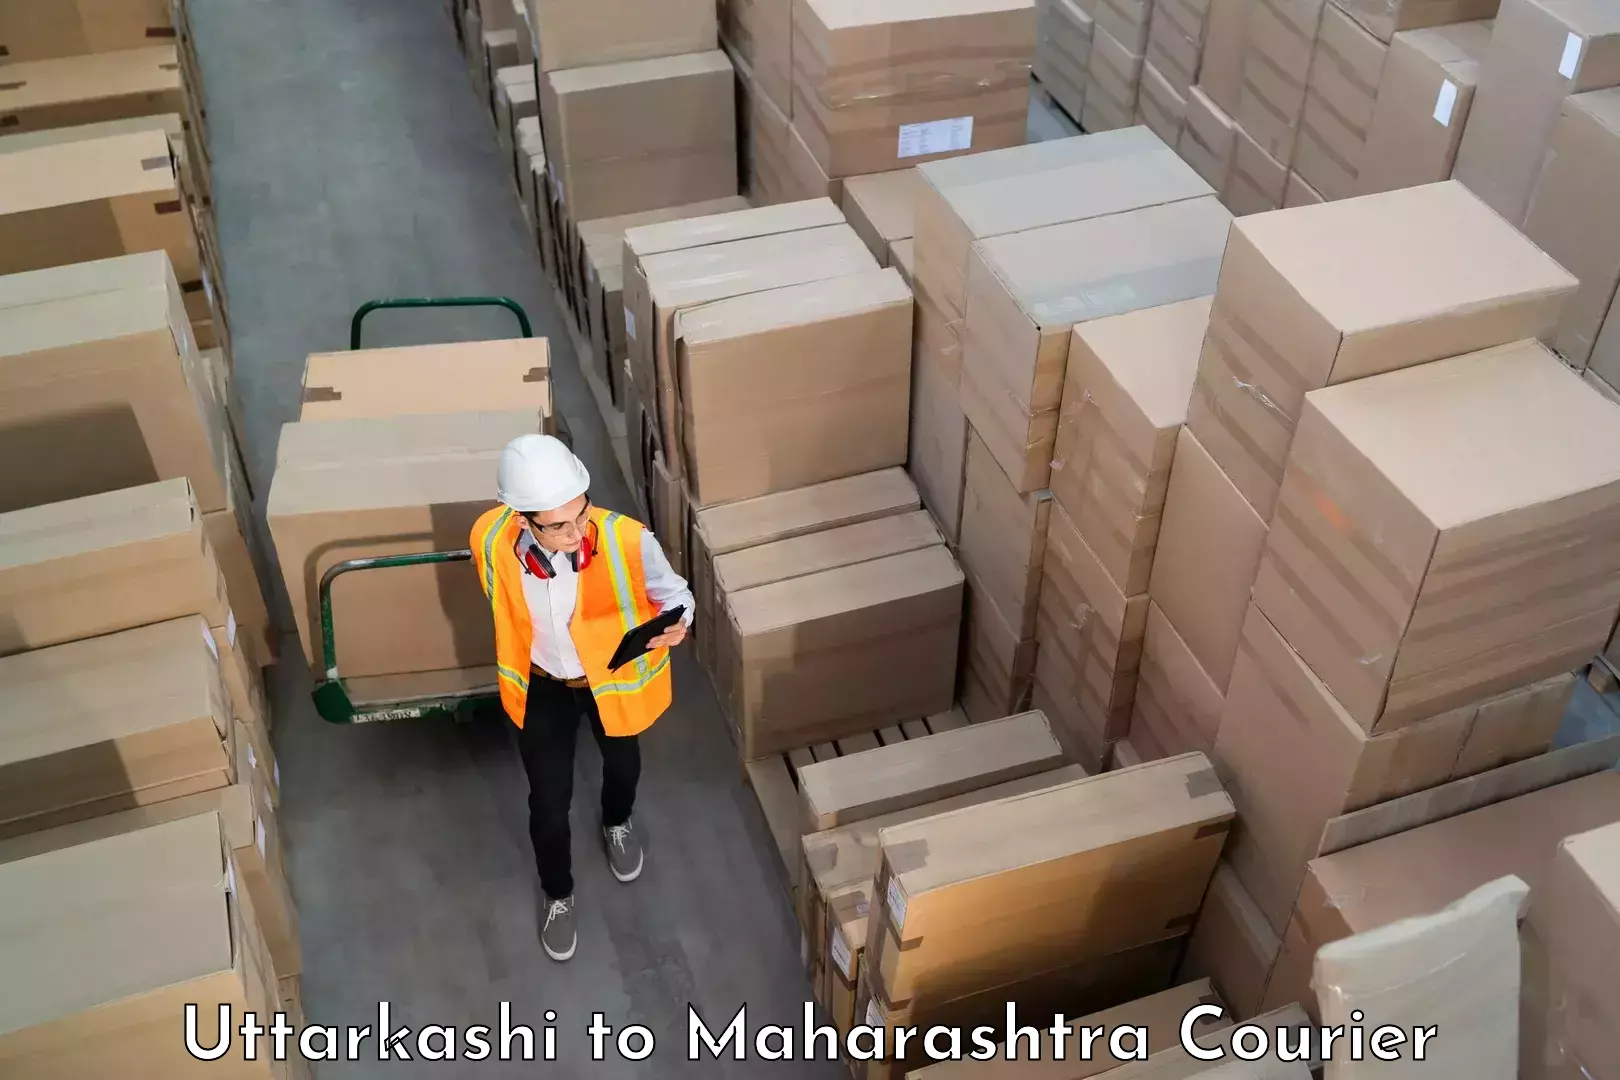 Luggage transport company Uttarkashi to Maharashtra